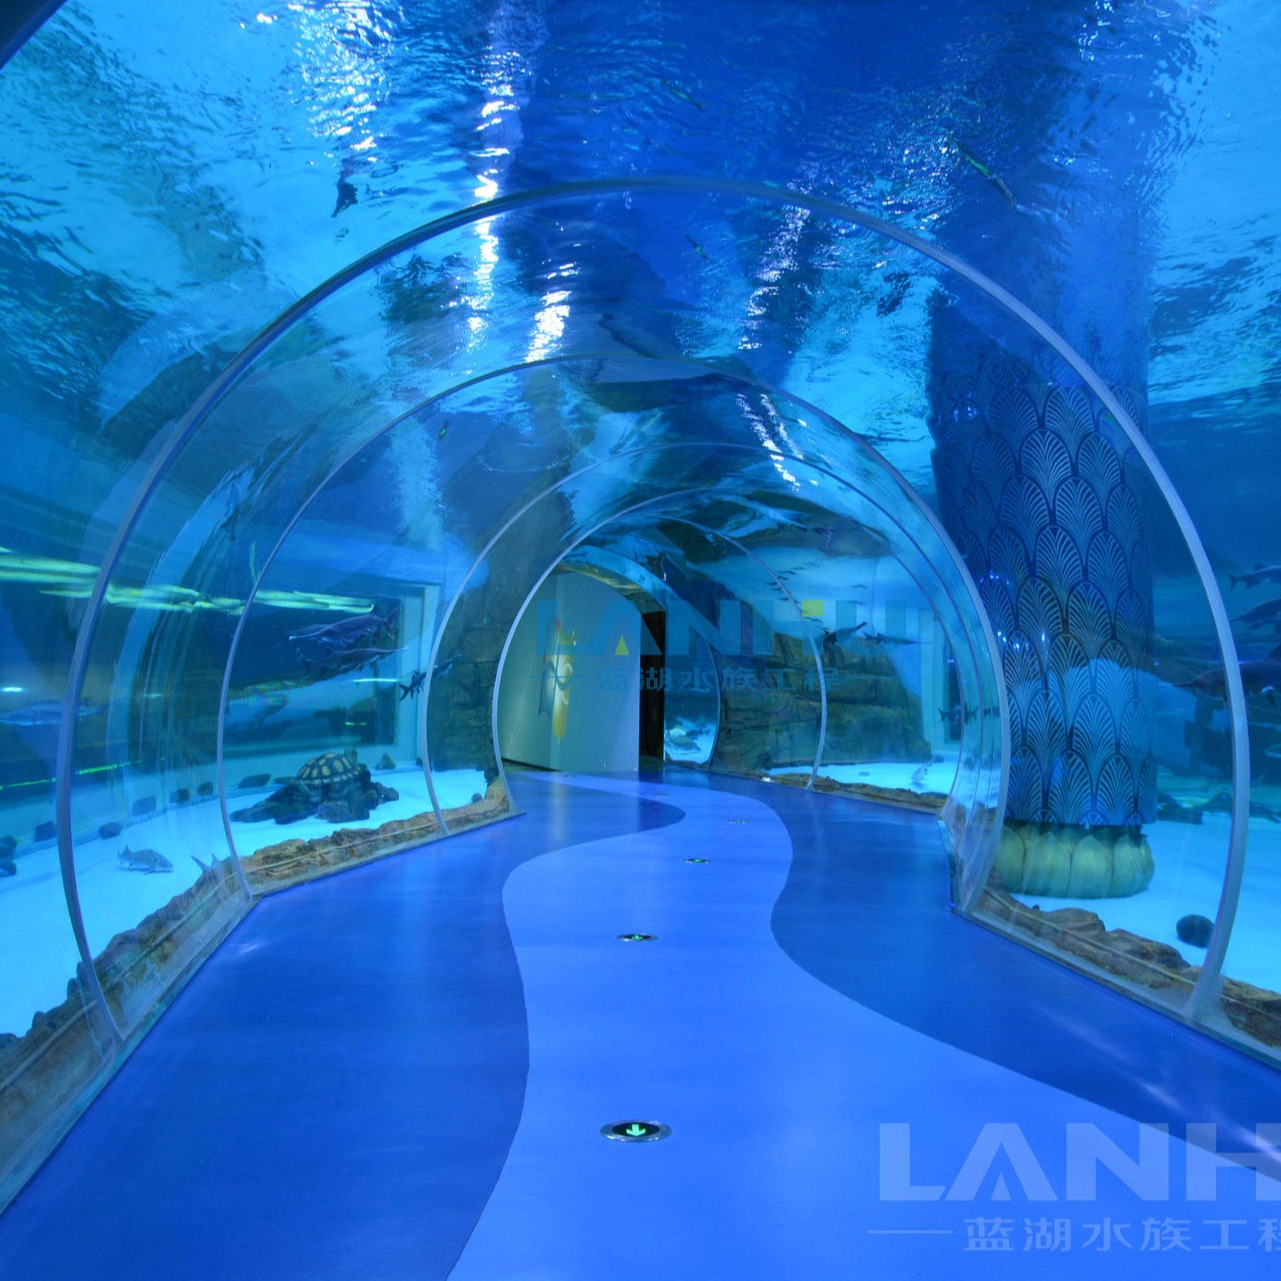 lanhu上海厂家 海洋馆设计施工 定制大型海洋餐厅亚克力鱼缸设计 海底隧道